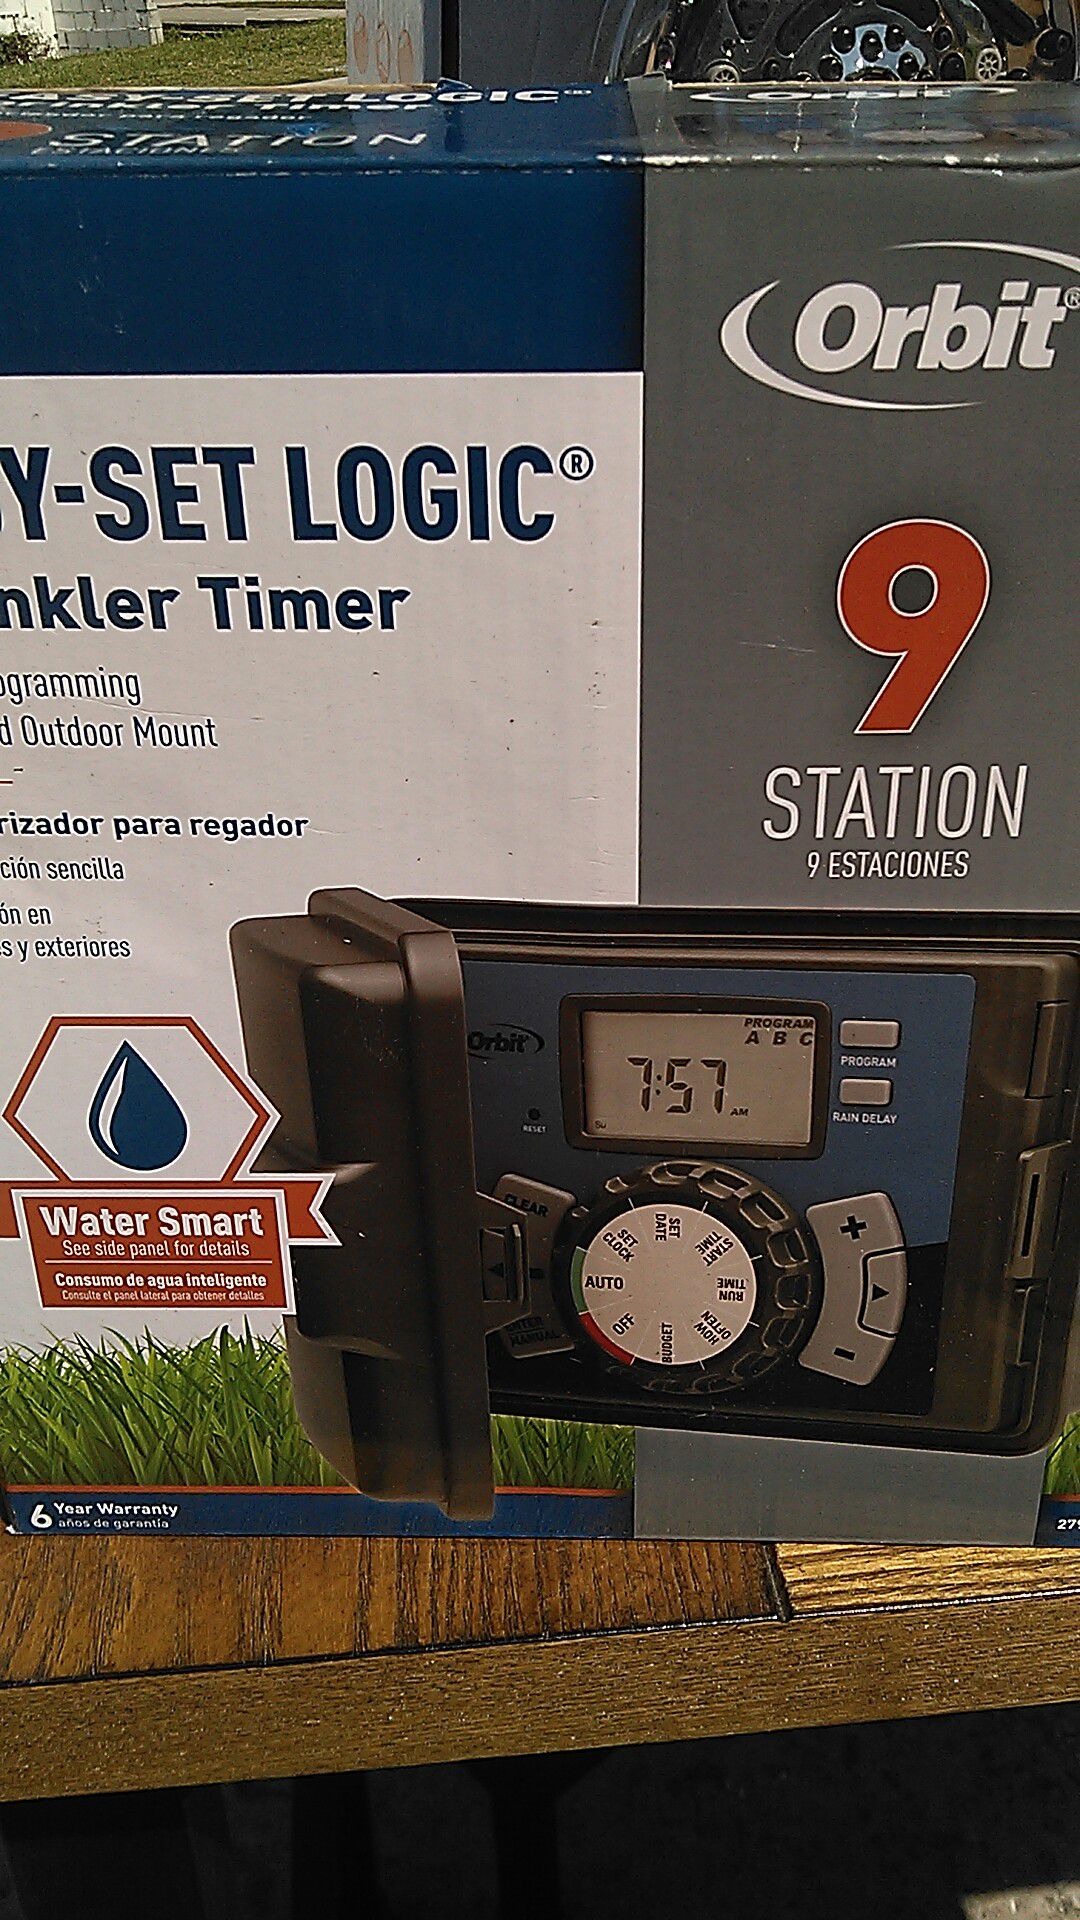 Orbit easy set logic sprinkler timer